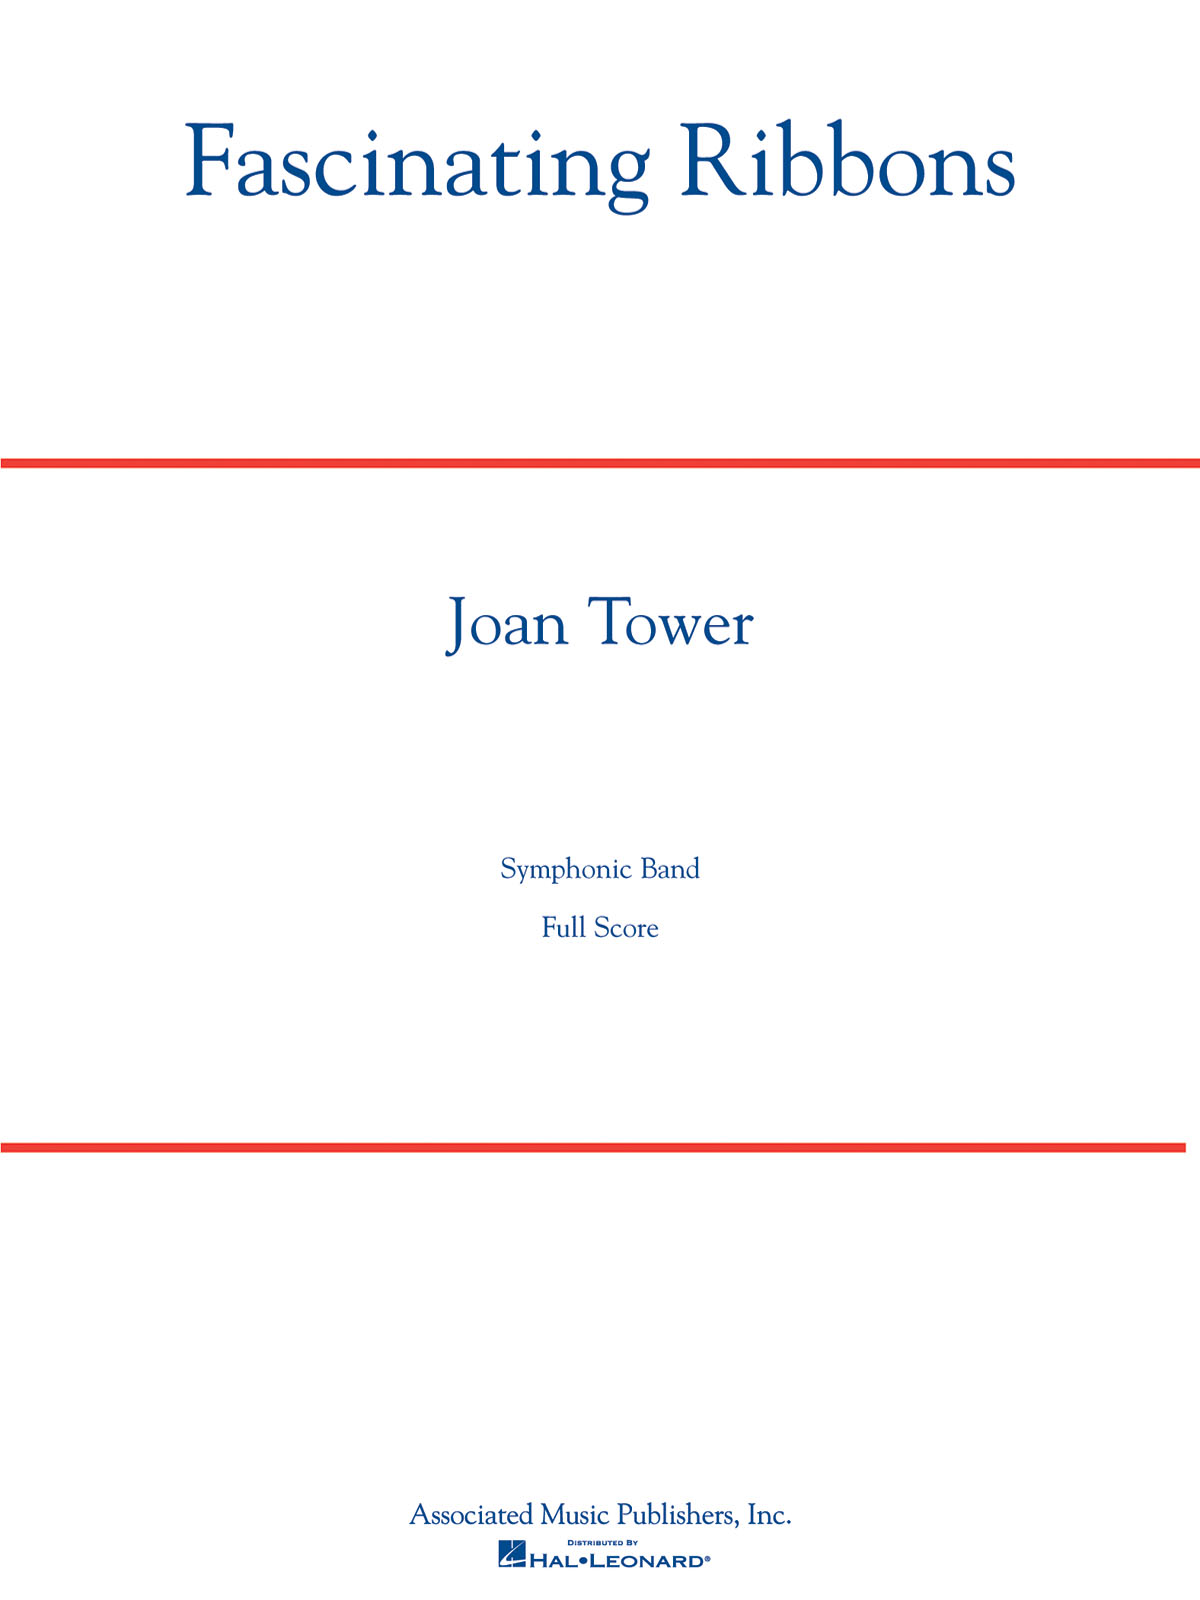 Joan Tower: Fascinating Ribbons